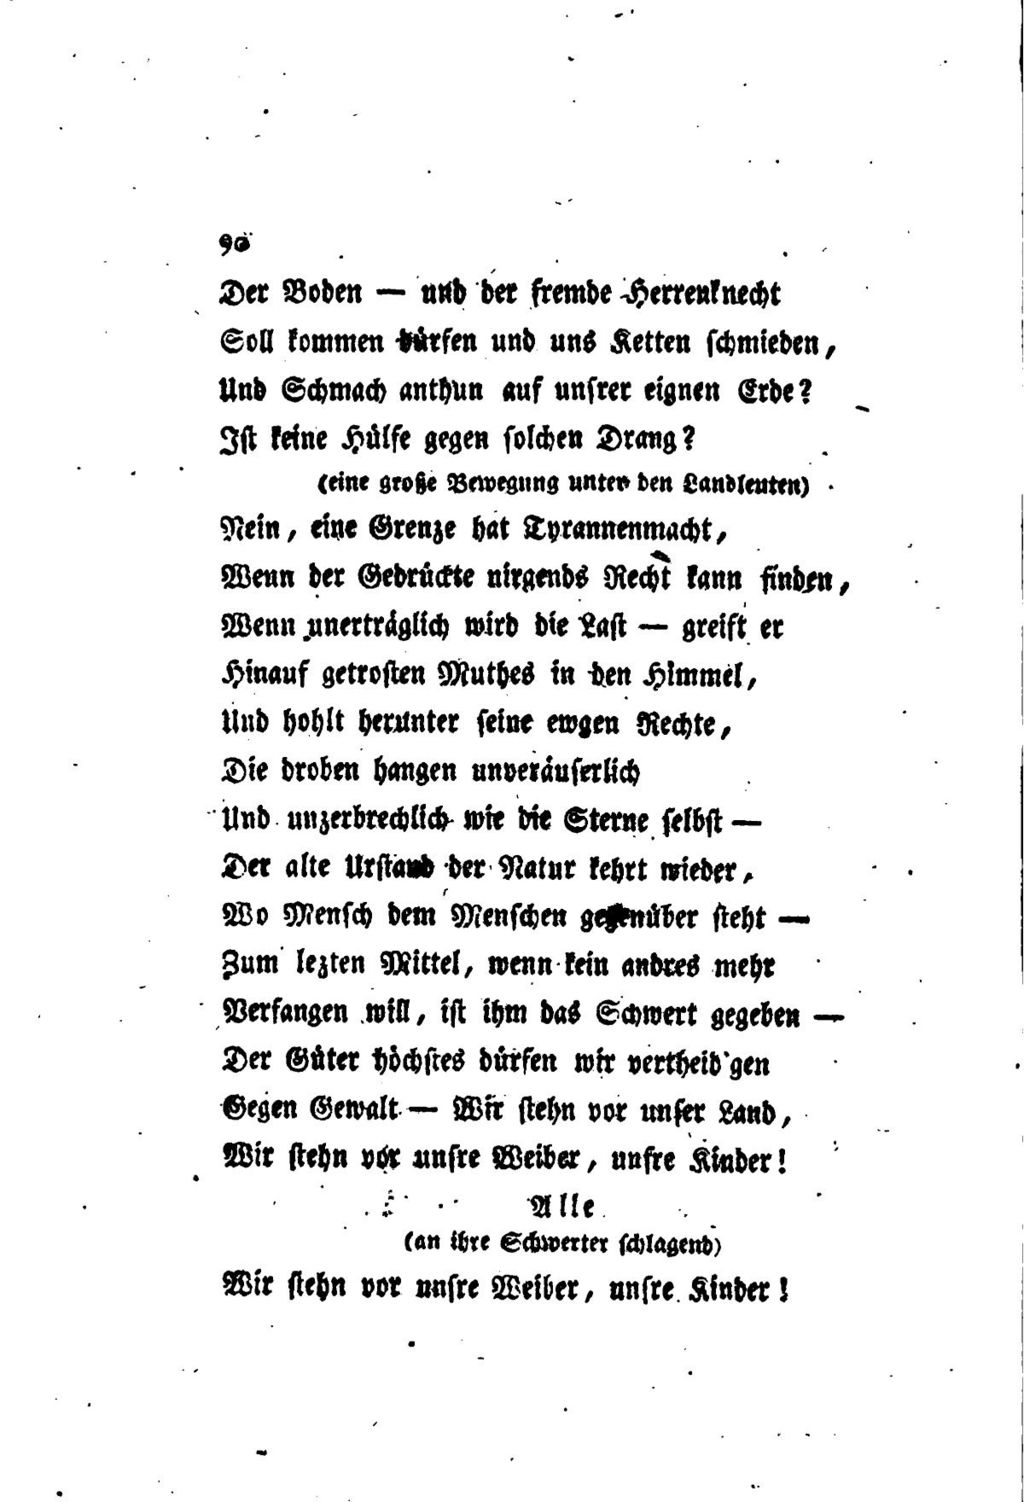 Buchseite, Fierdrich Schiller Wilhelm Tell, Rütliszene, Stauffacher